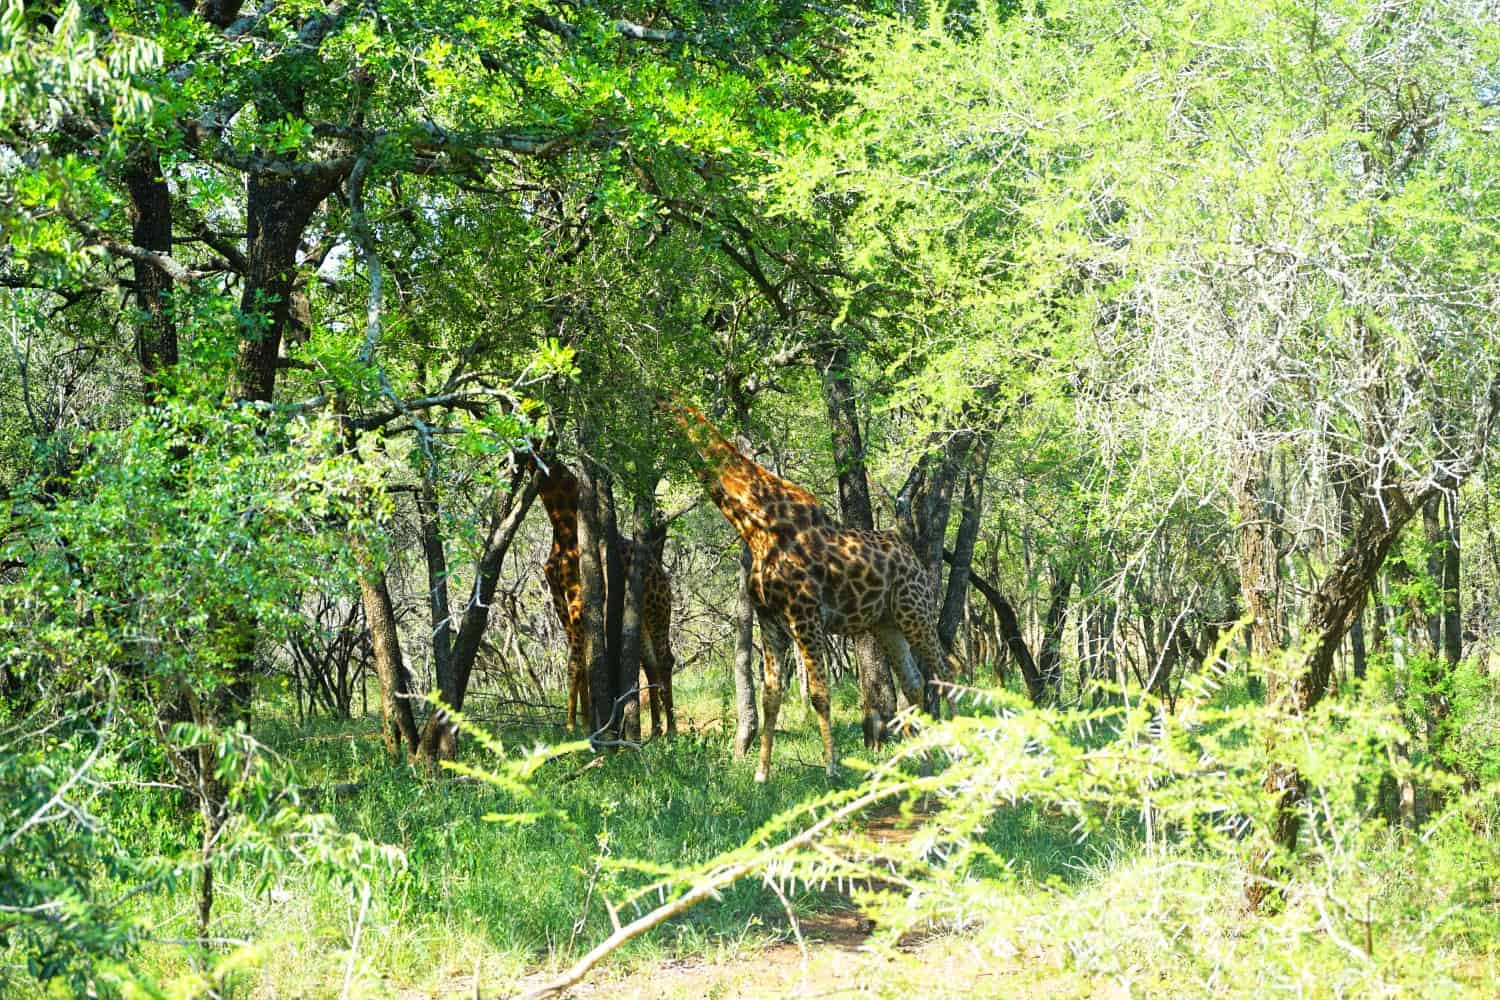 Giraffes at Hlane National Park